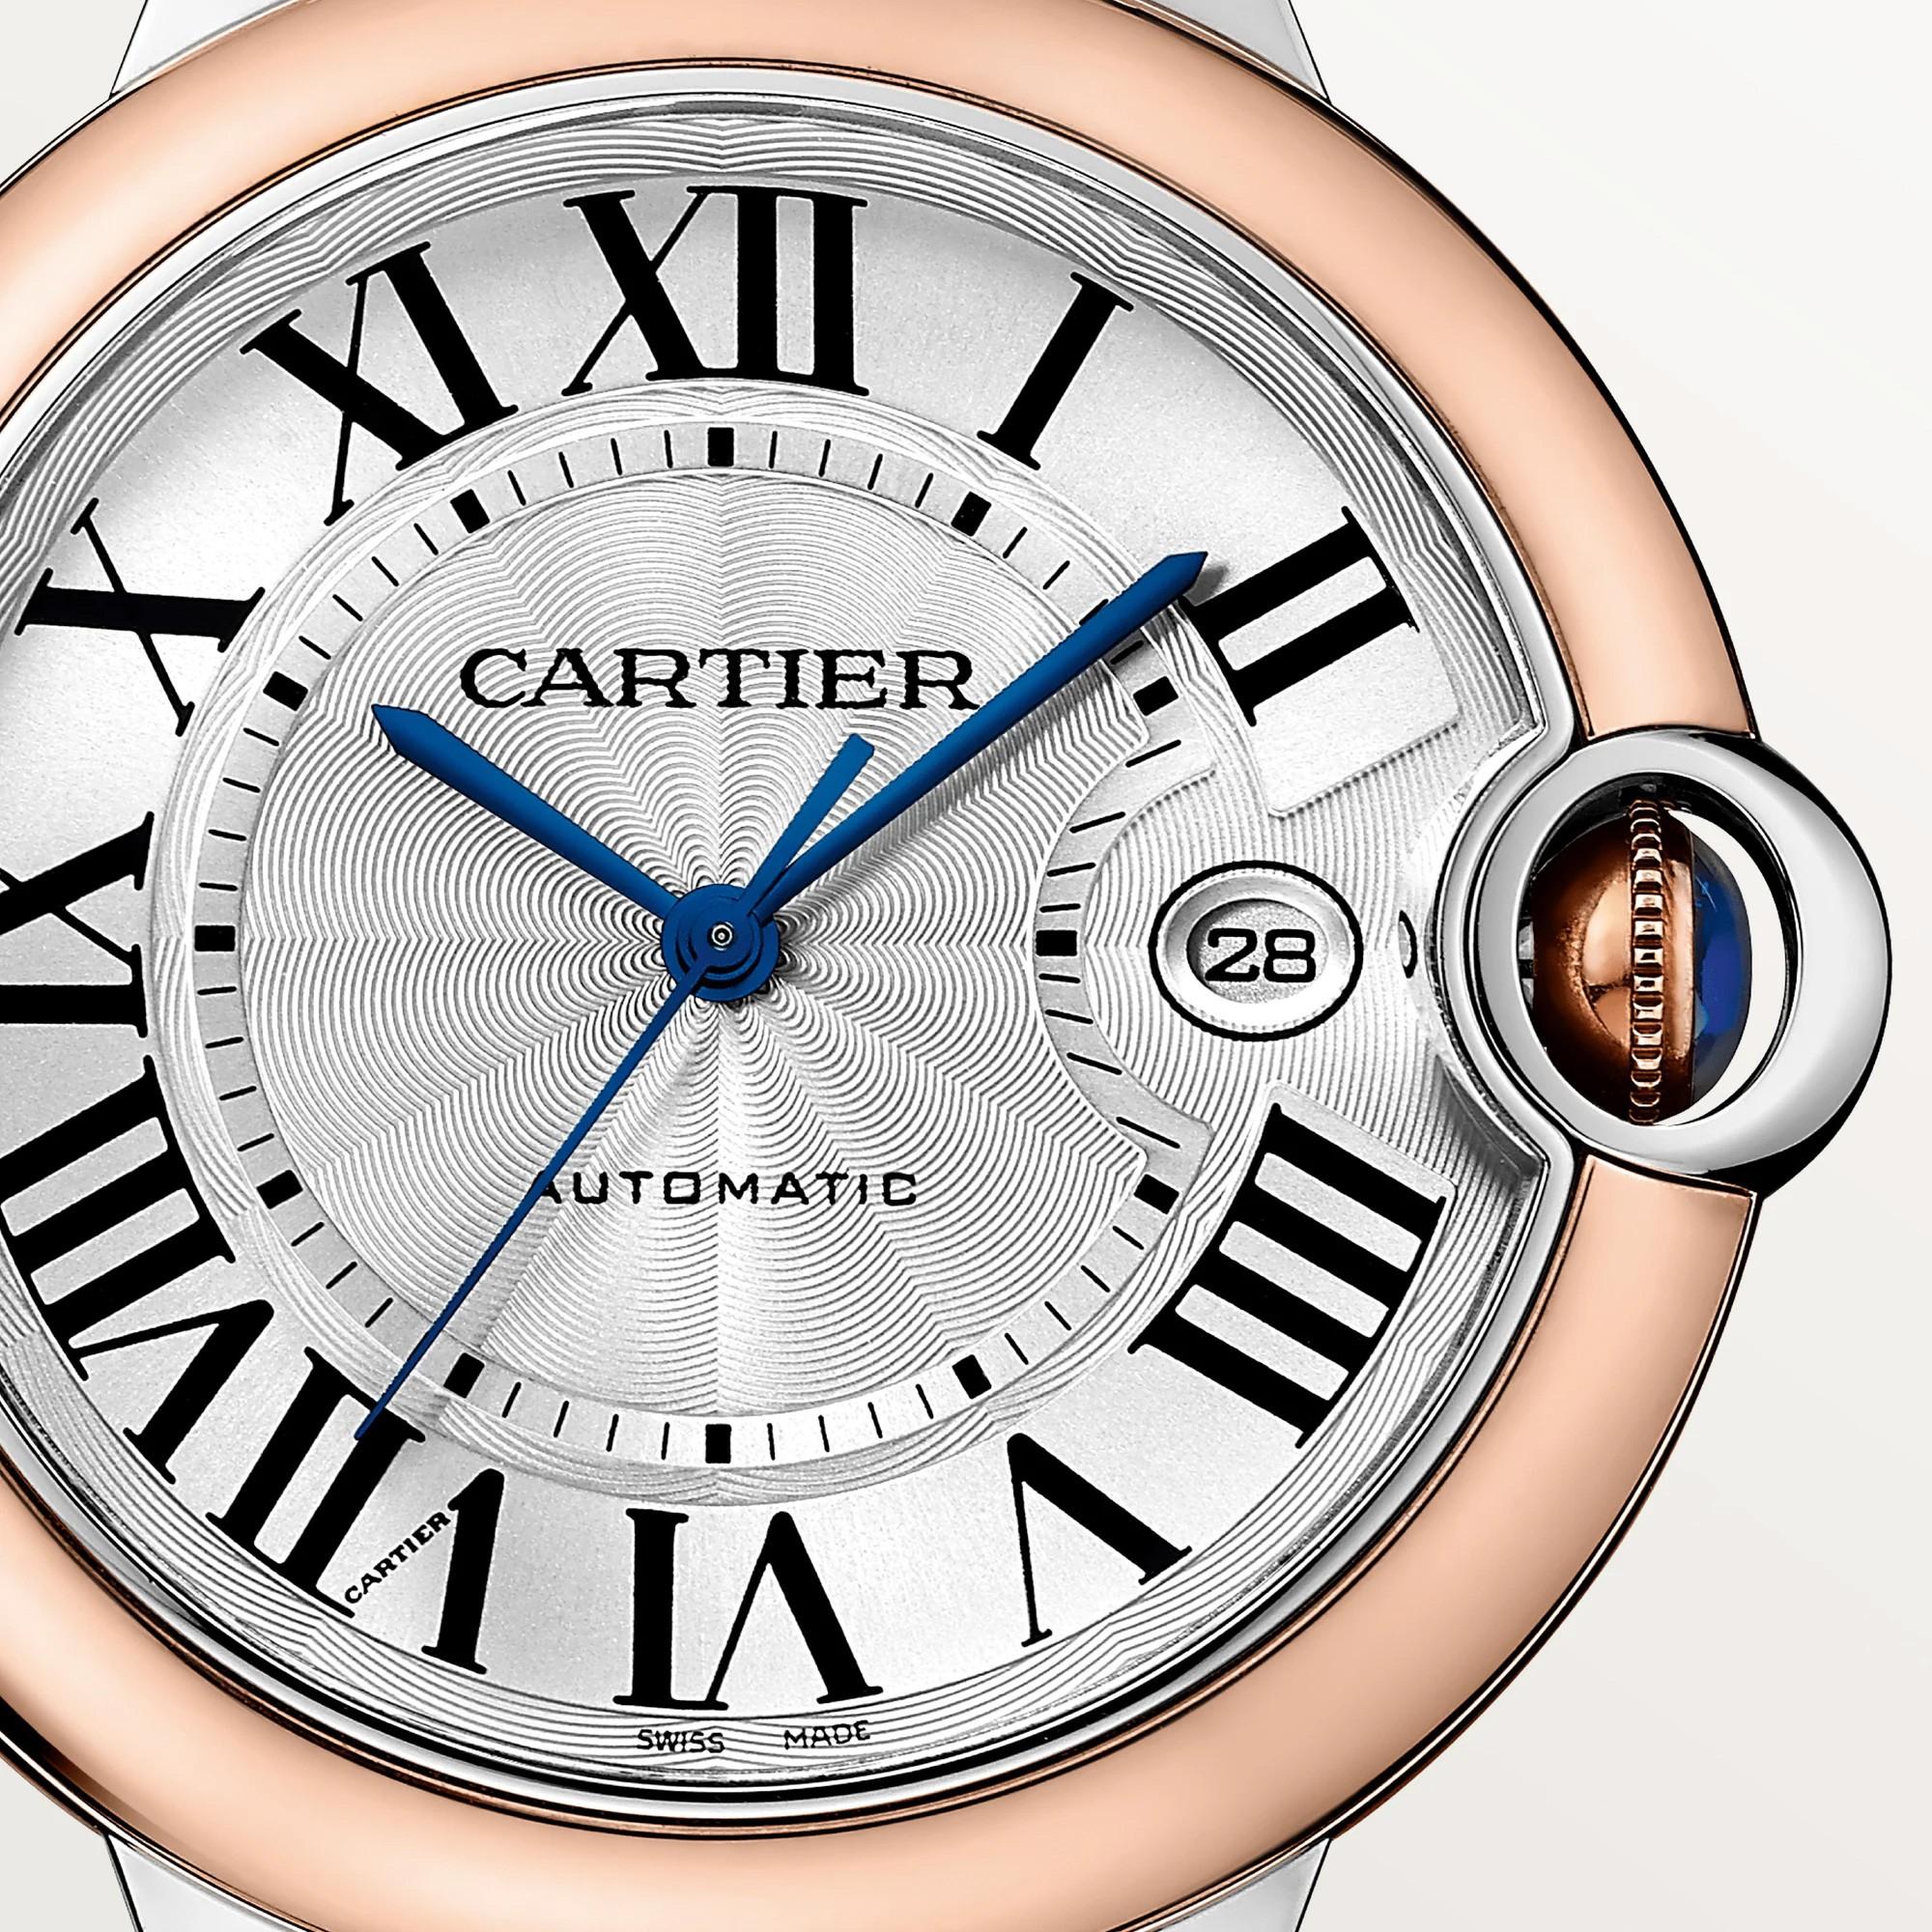 Ballon Bleu de Cartier Watch in Rose Gold, 42mm 1